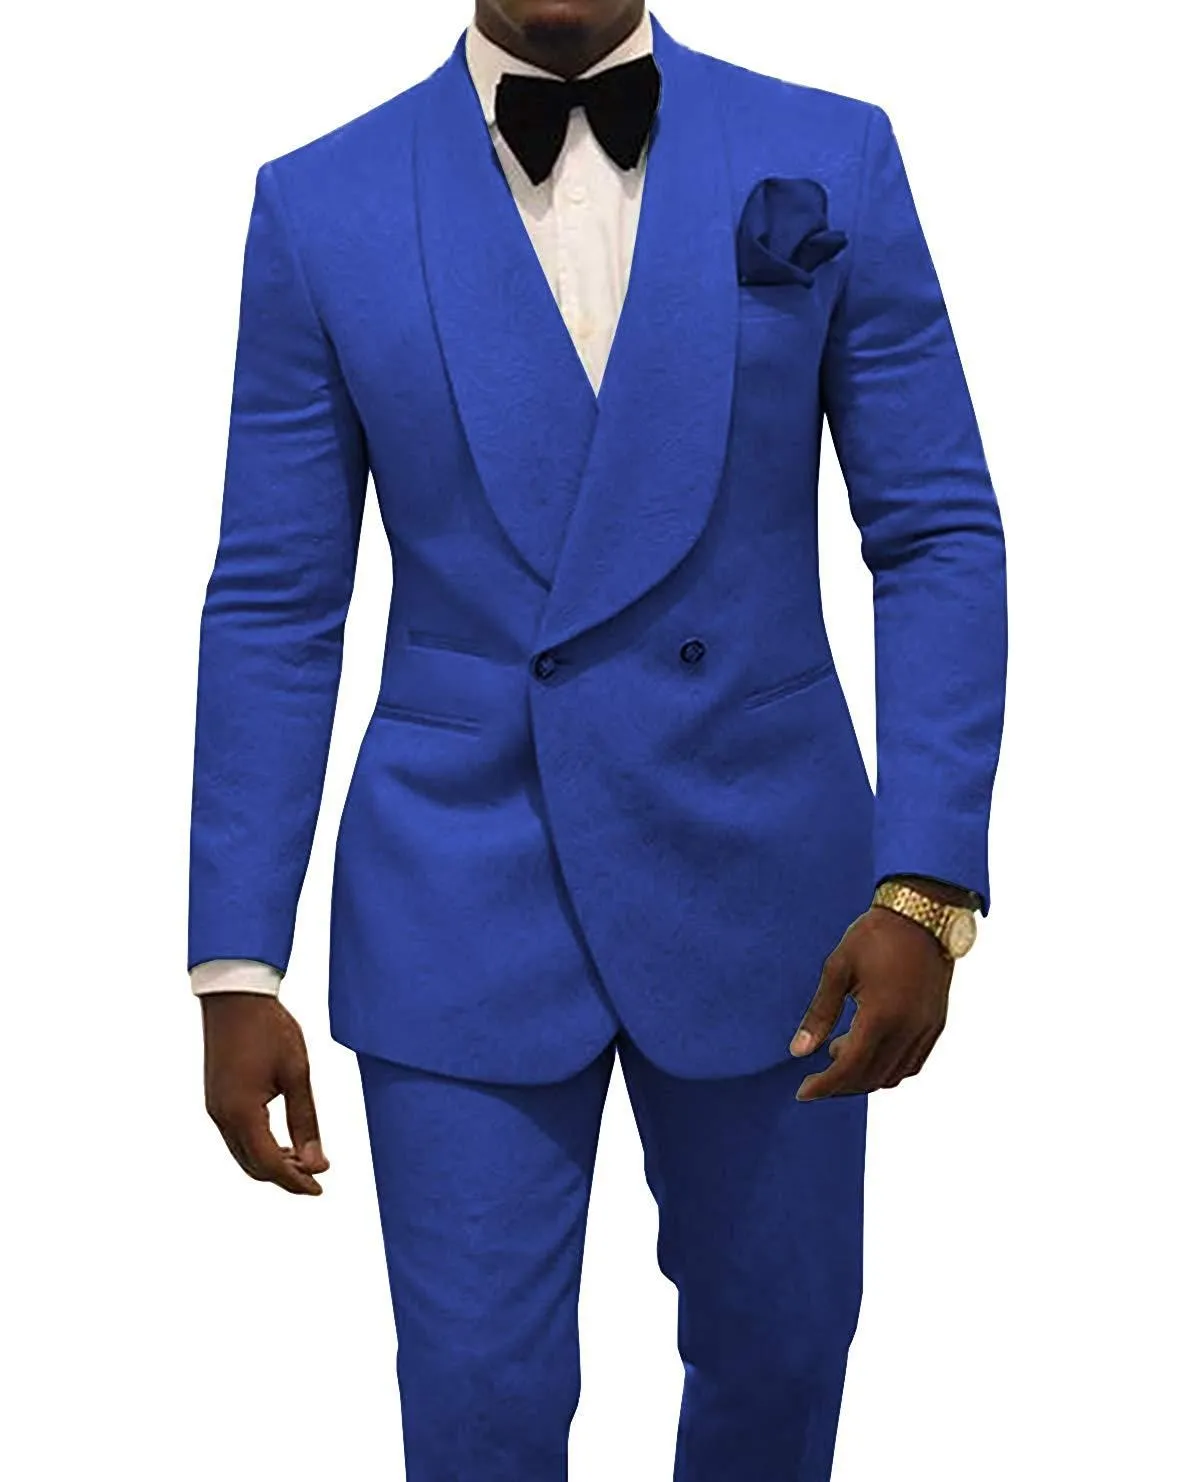 الأزرق الملكي الرجال الزفاف البدلات الرسمية النقش العريس البدلات الرسمية أزياء الرجال السترة 2 قطعة بدلة حفلة موسيقية / عشاء سترات مخصص (سترة + سروال + التعادل) 1629